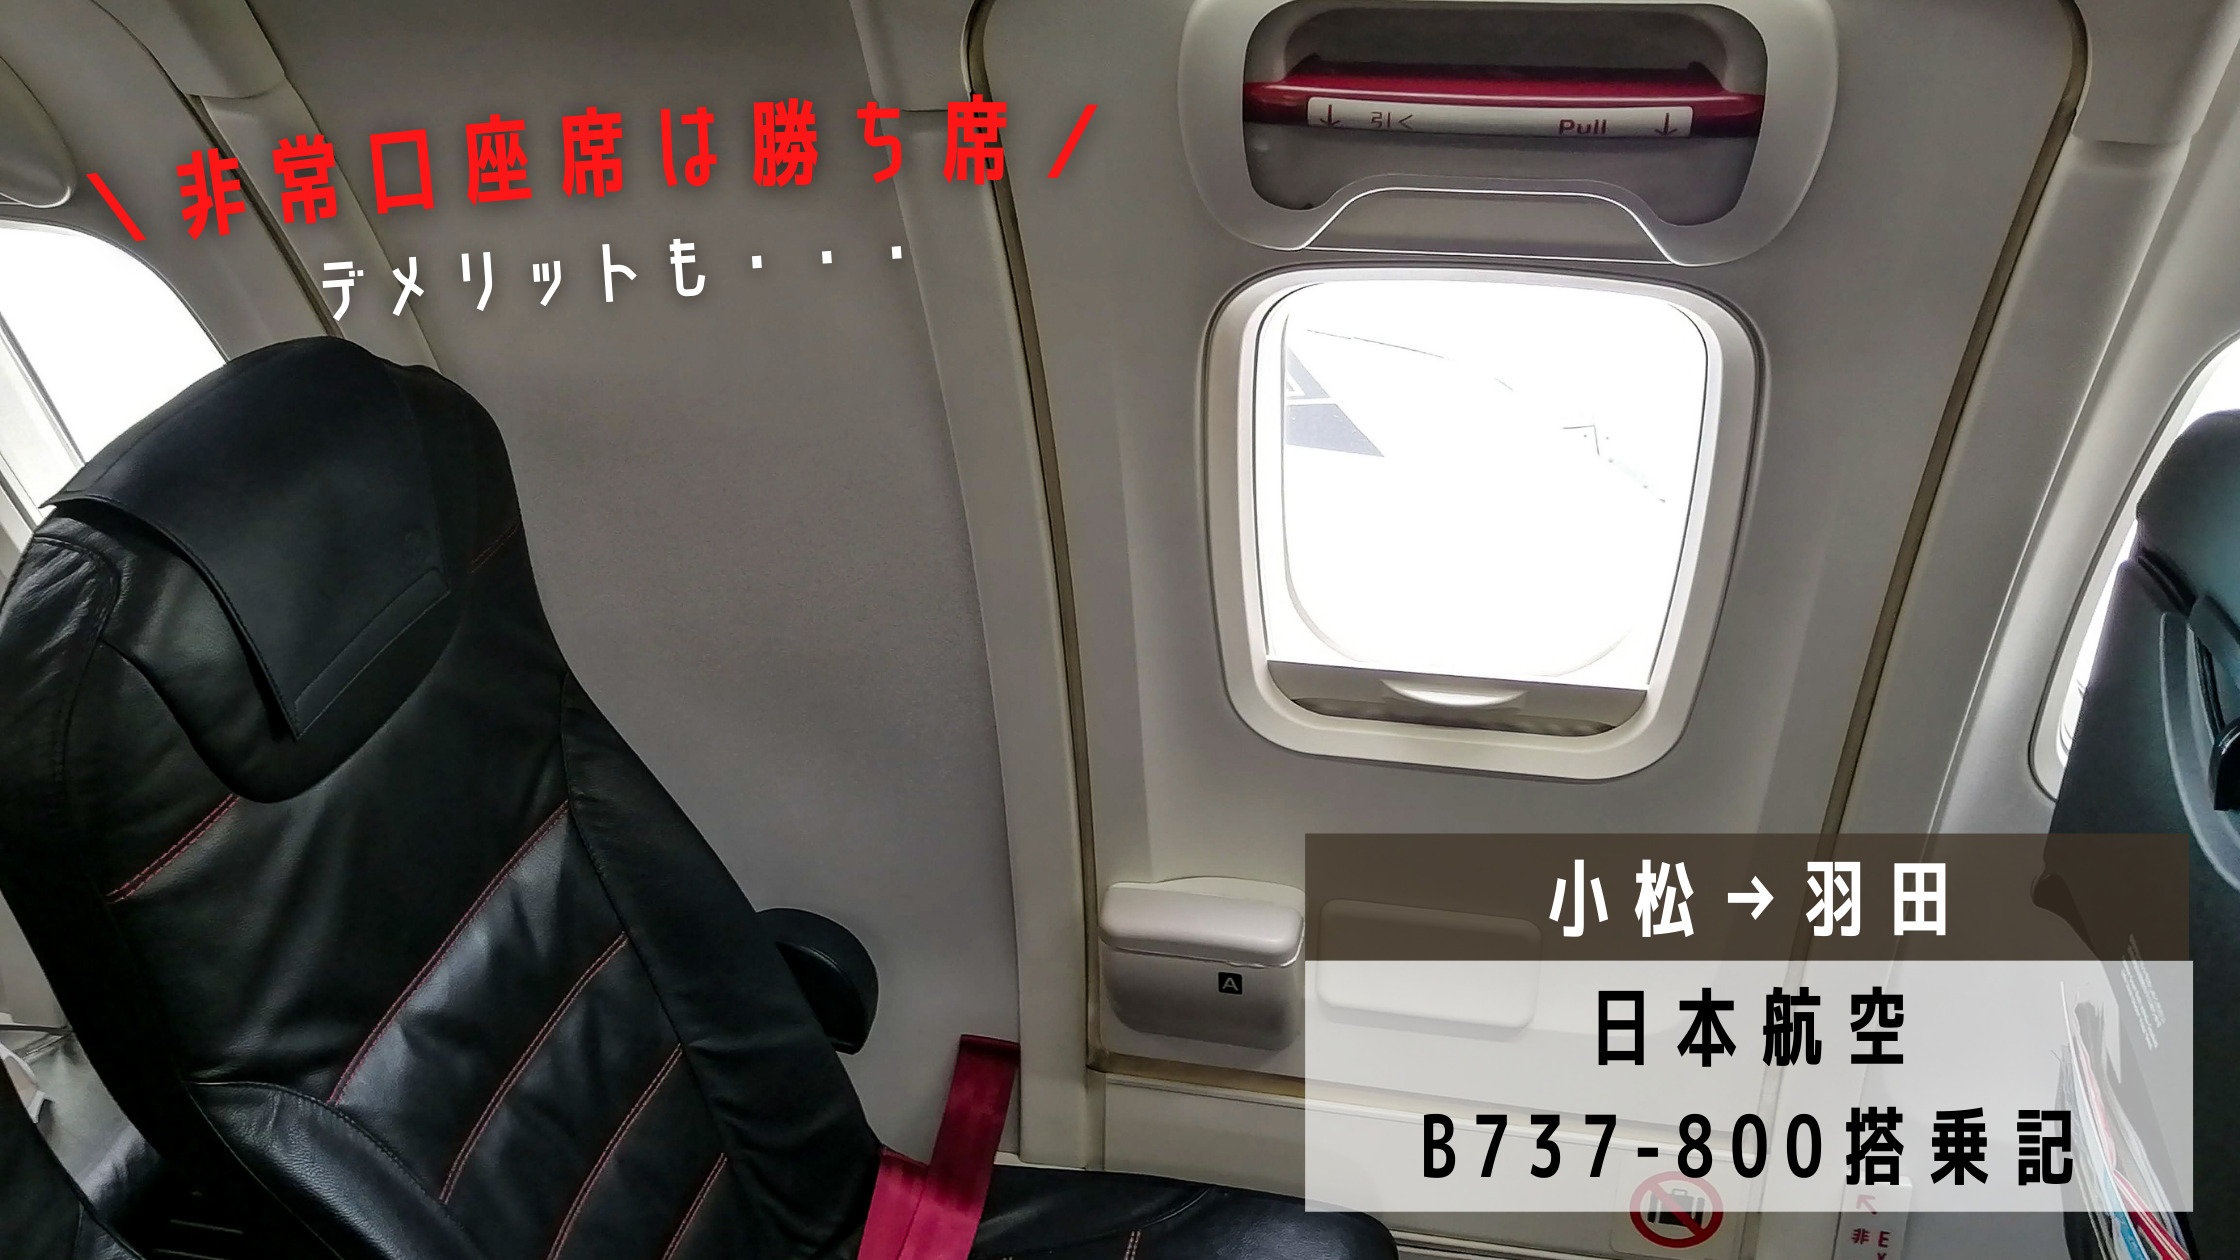 小松 羽田 勝ち席の非常口座席にもデメリット 日本航空 Jal 37 800搭乗記 シテイリョウコウ